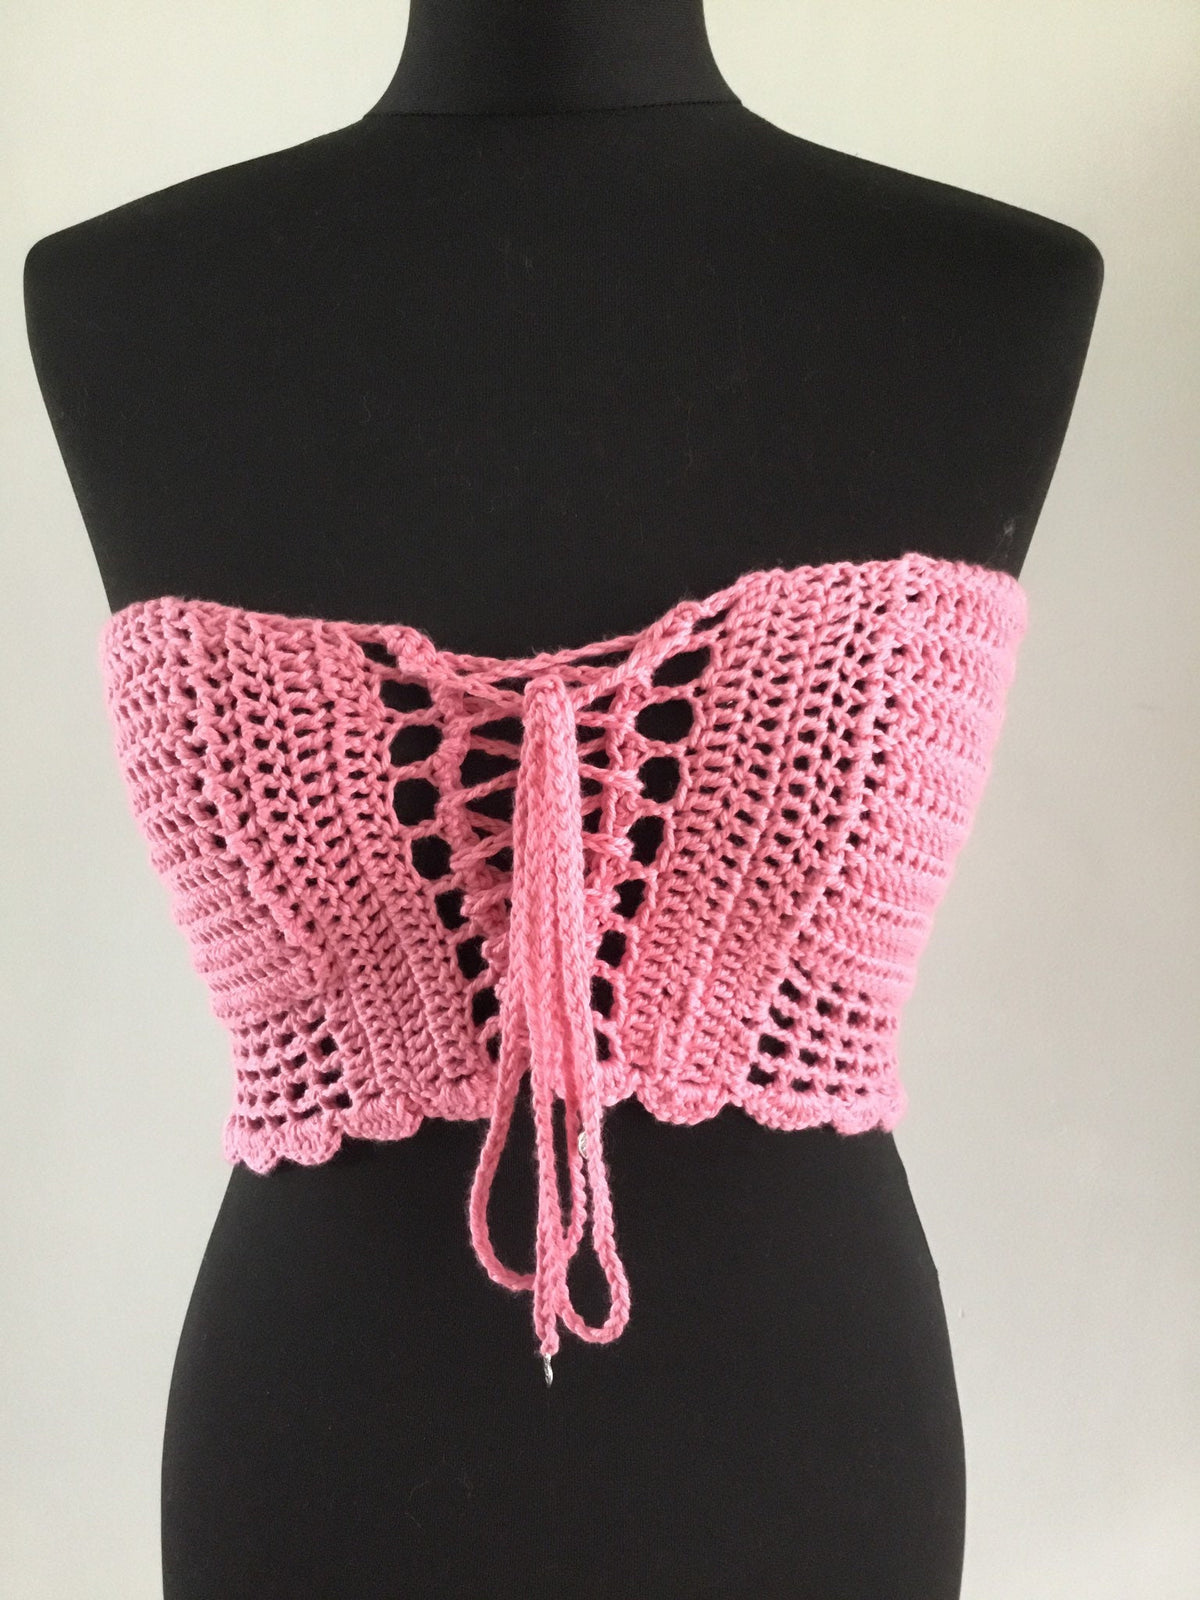 Crochet Crop Top Basque design